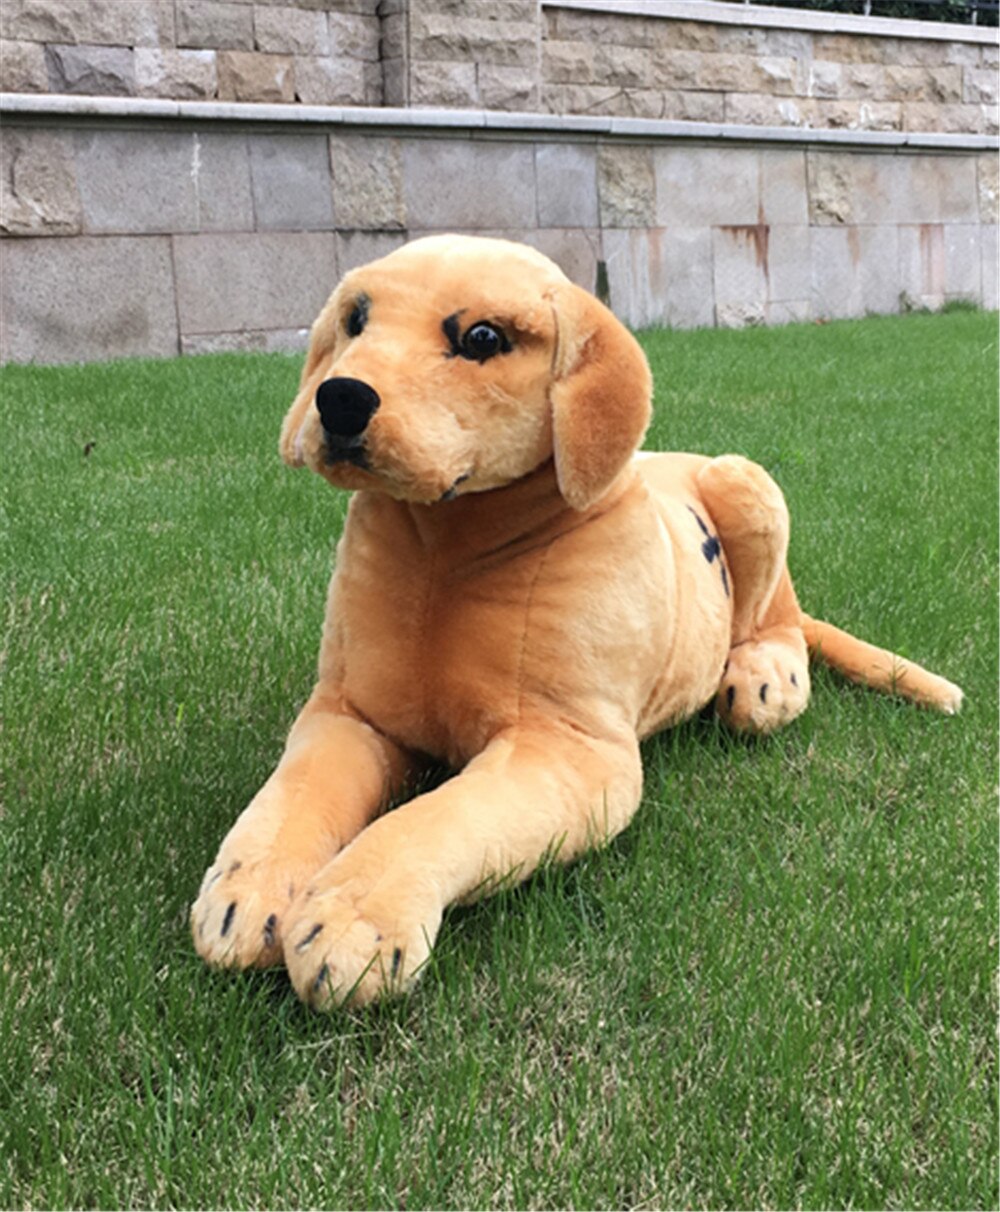 Fancytrader Emulational Labrador Dog Plush Toy Big Stuffed Realistic Animals Dogs Doll 75cm 30inch